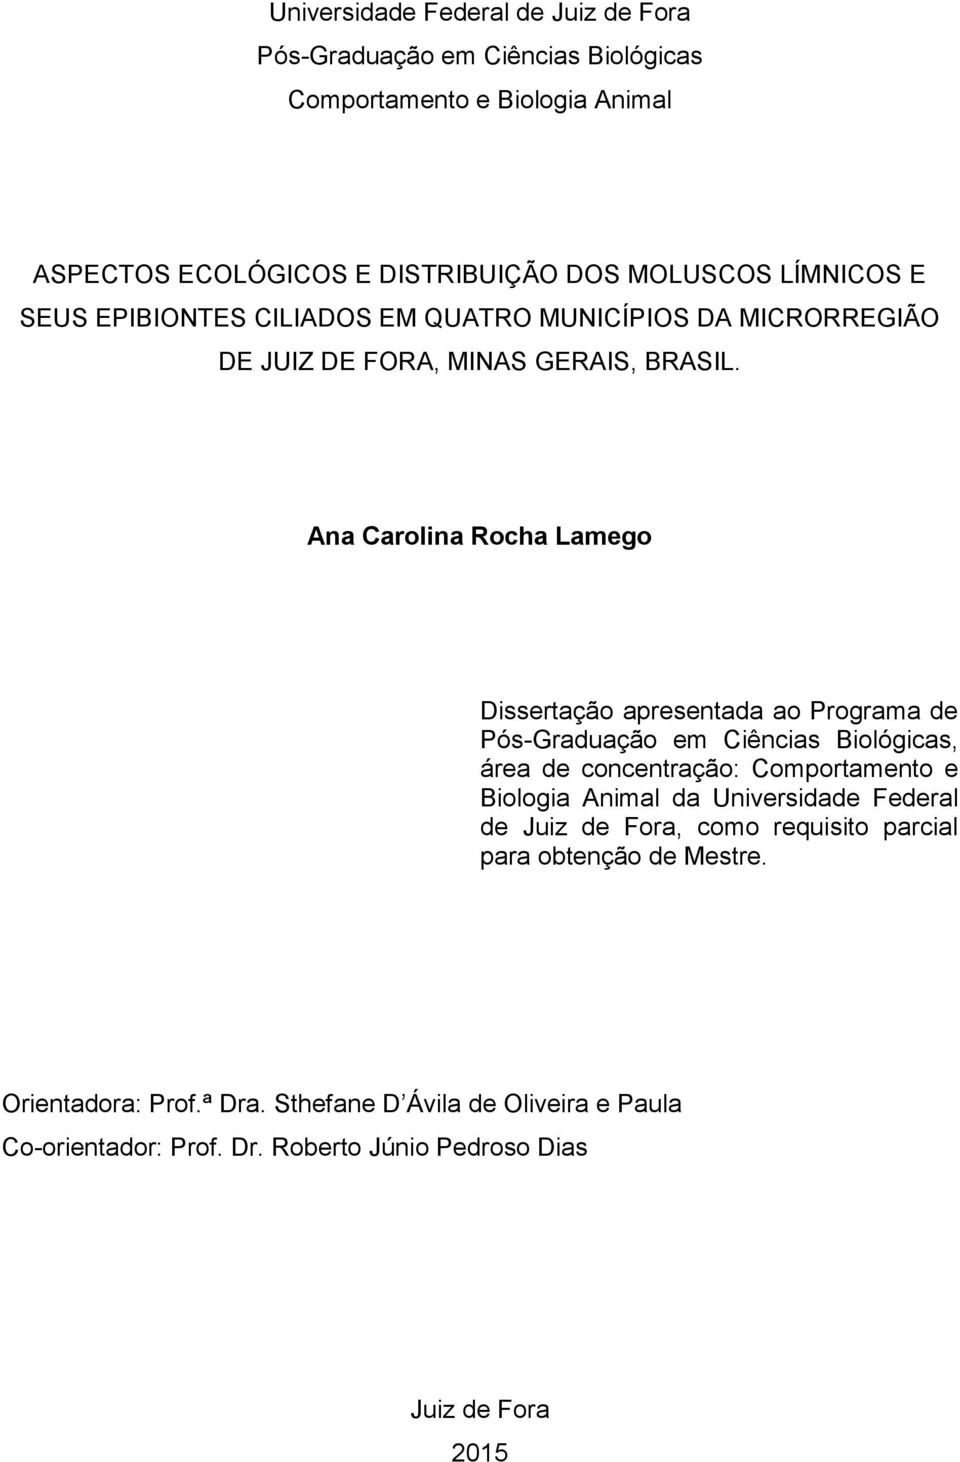 Ana Carolina Rocha Lamego Dissertação apresentada ao Programa de Pós-Graduação em Ciências Biológicas, área de concentração: Comportamento e Biologia Animal da